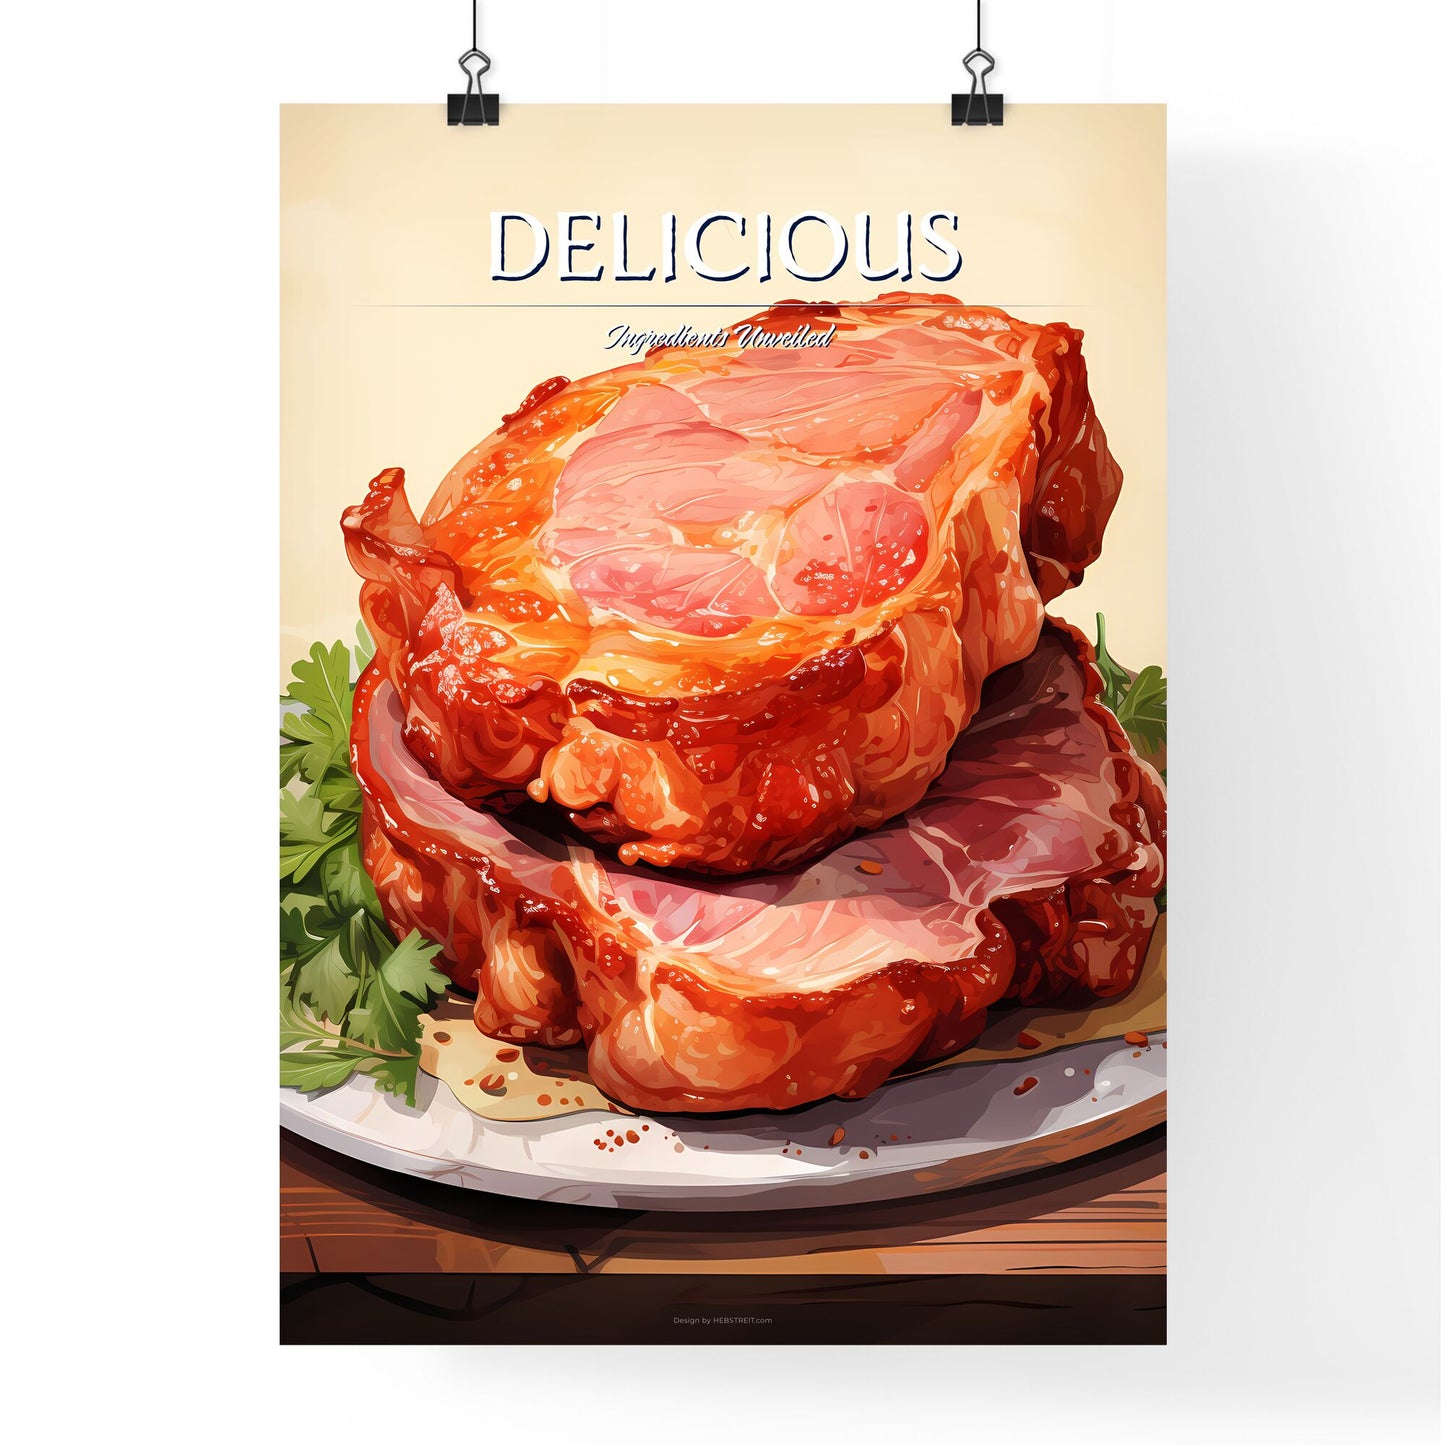 Pork - A Close Up Of Food Default Title